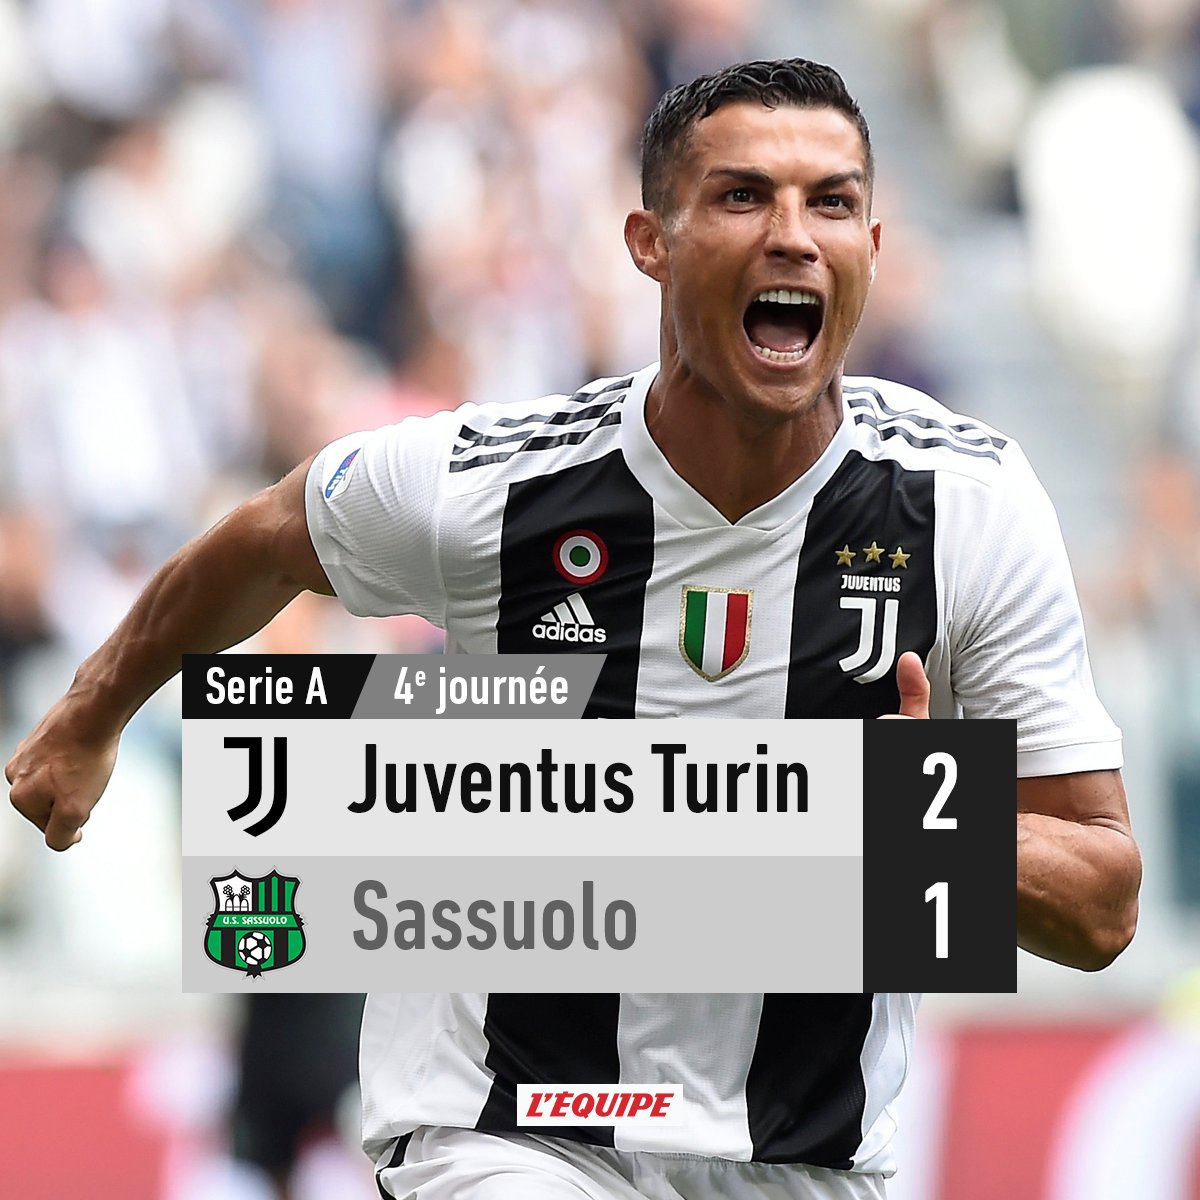 Léquipe On Twitter La Juventus Turin Bat Sassuolo 2 1 En